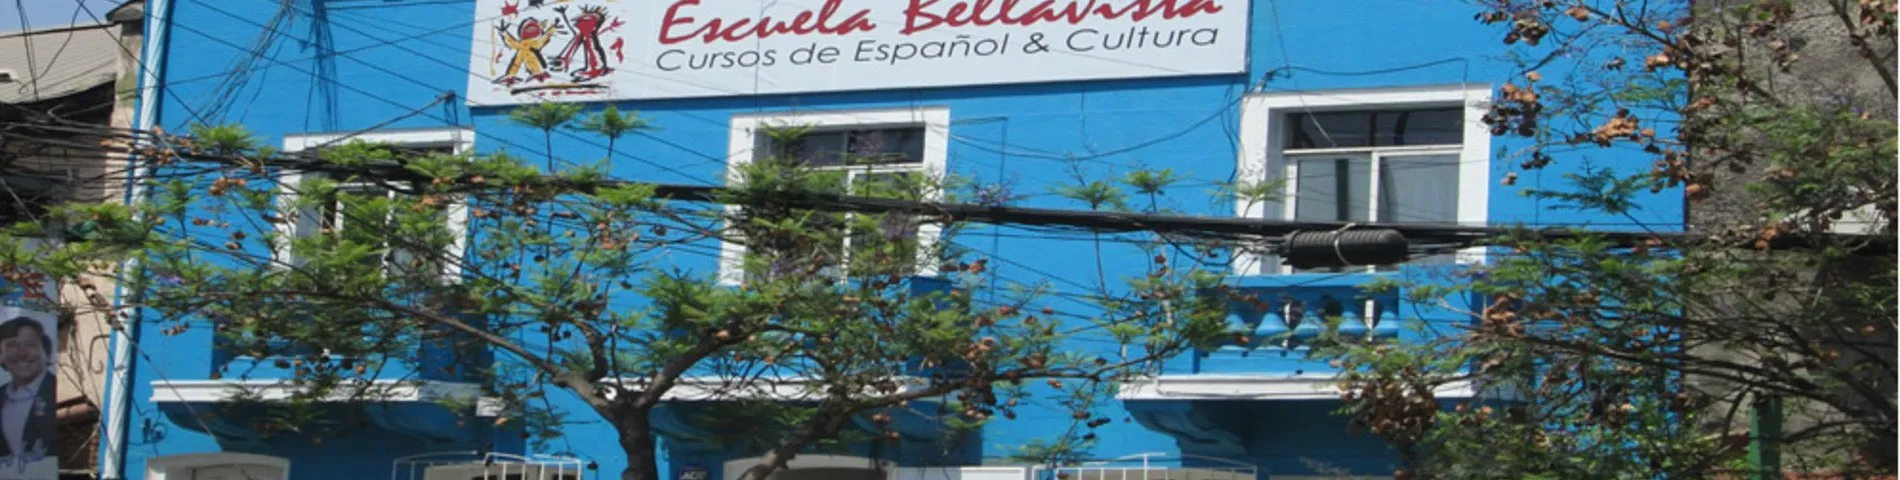 Escuela Bellavista 사진 1